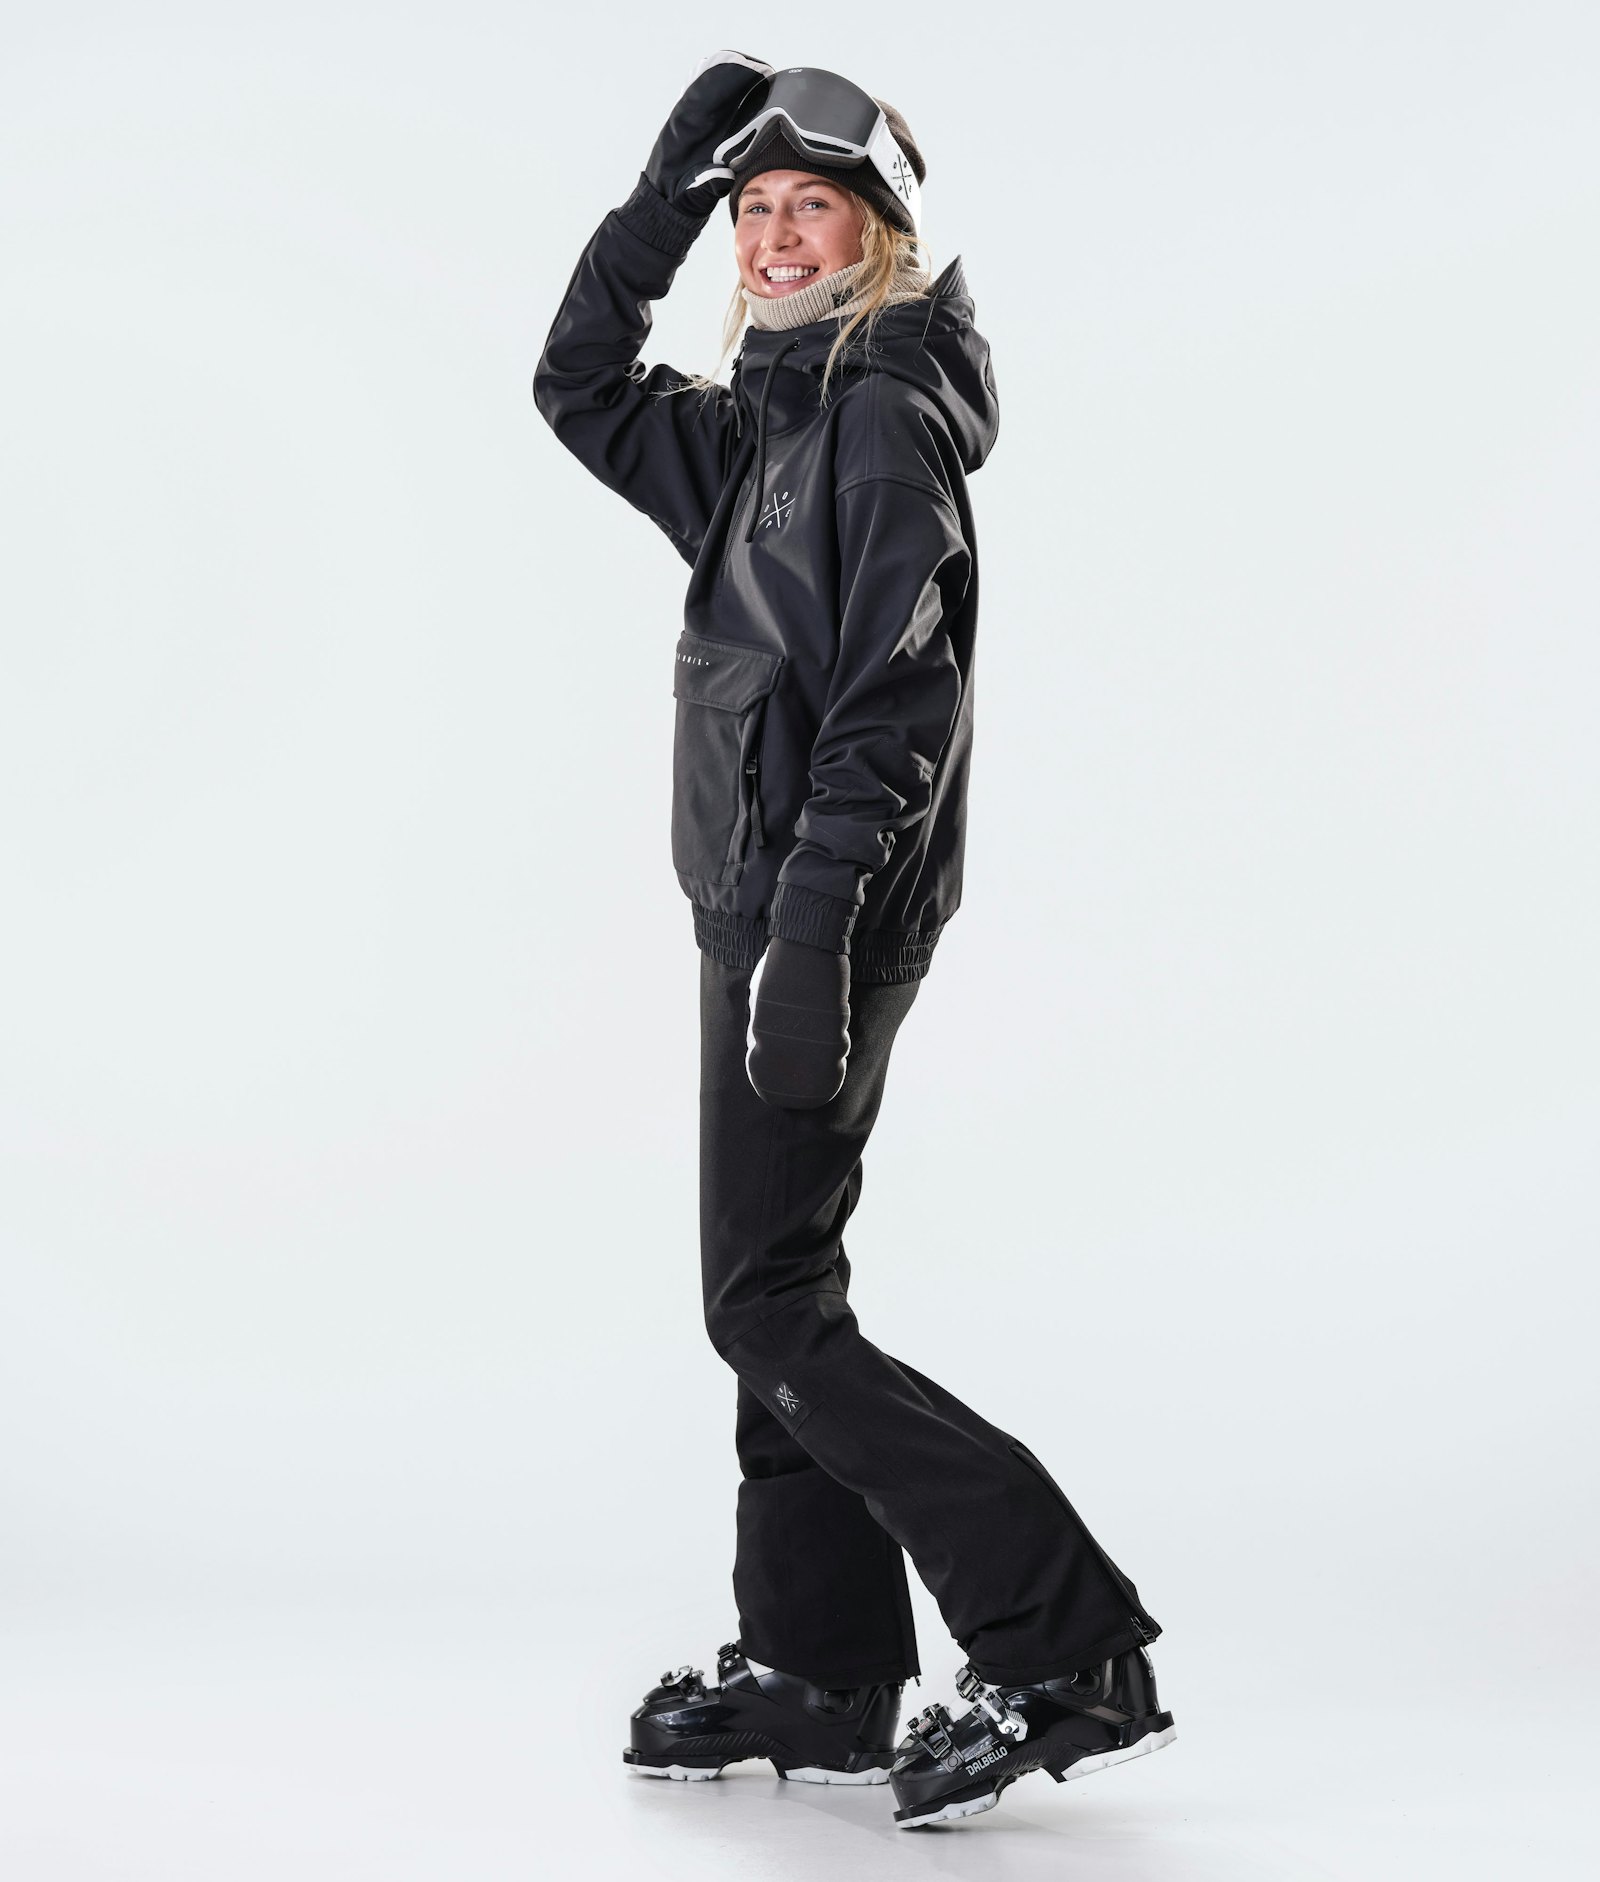 Cyclone W 2020 Ski Jacket Women Black